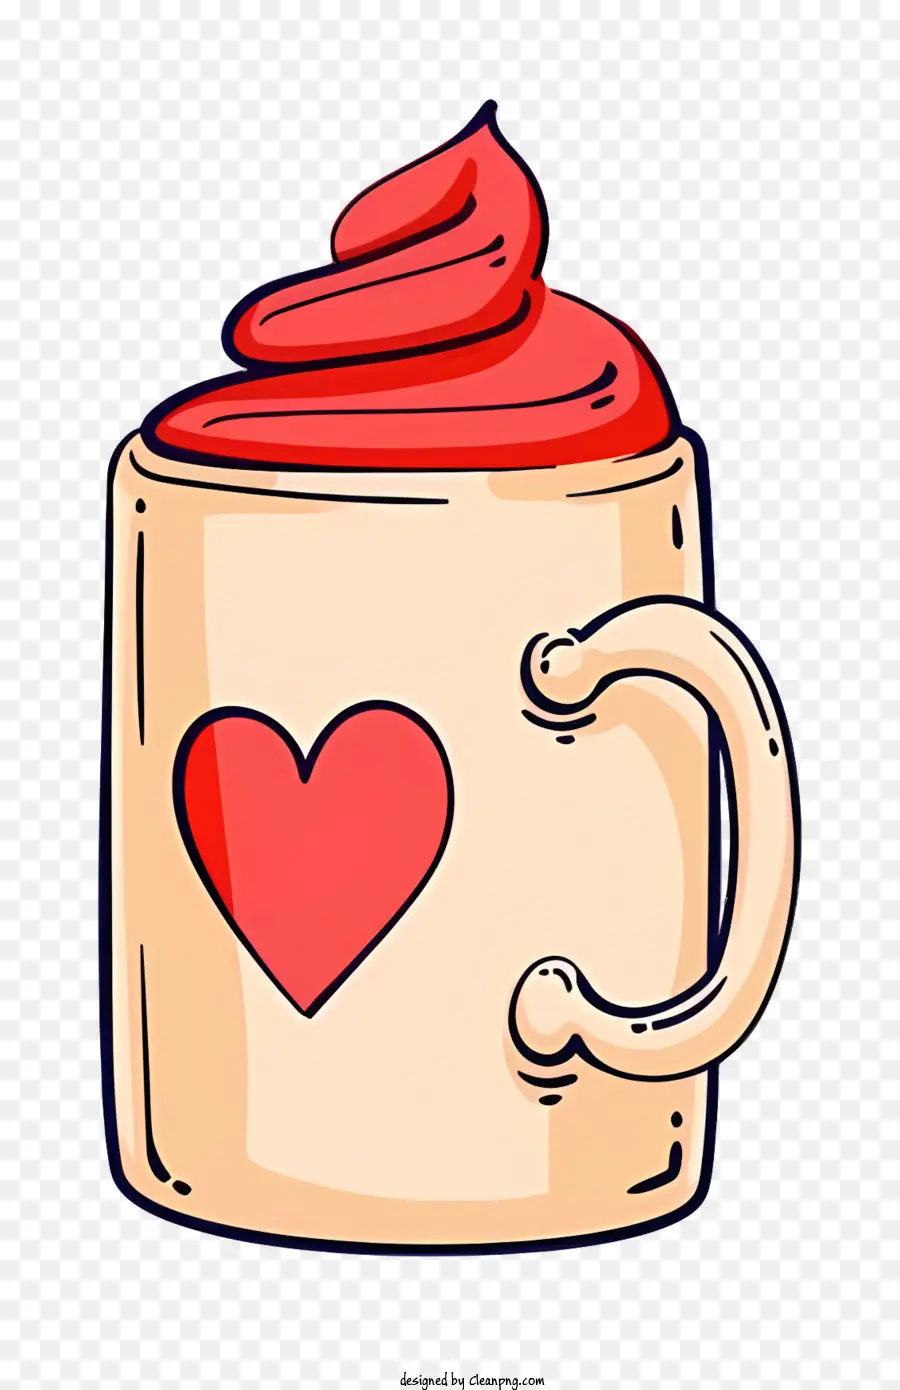 simbolo di cuore - La tazza rossa con il cuore simboleggia l'amore e la passione